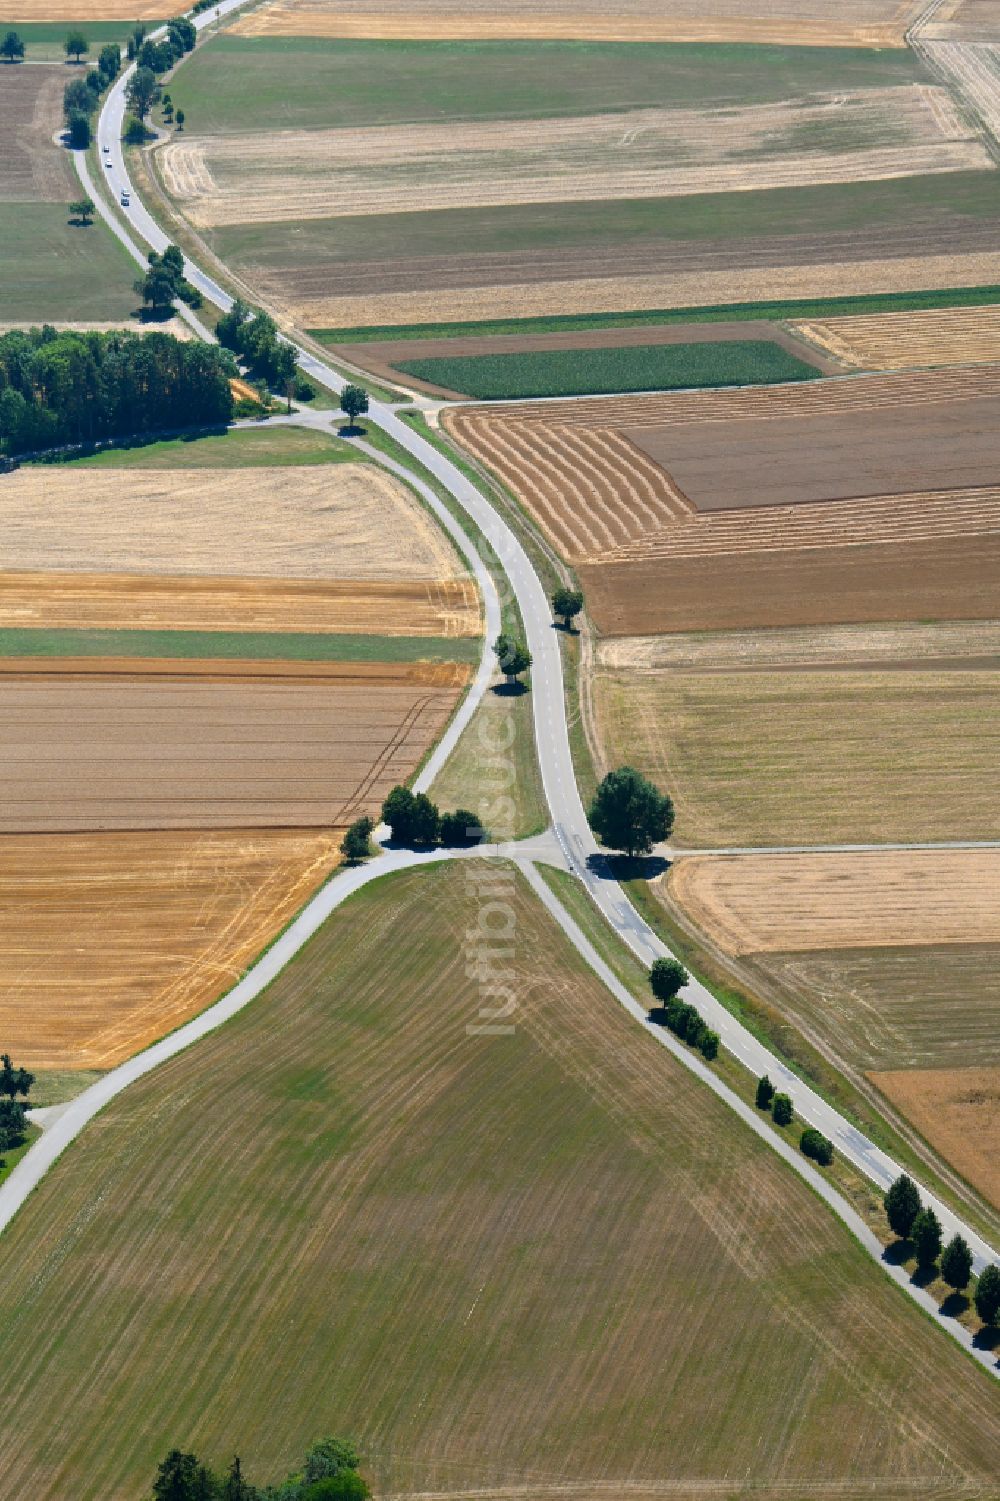 Schopfloch aus der Vogelperspektive: Strukturen auf landwirtschaftlichen Feldern und Straßengabelung in Schopfloch im Bundesland Baden-Württemberg, Deutschland